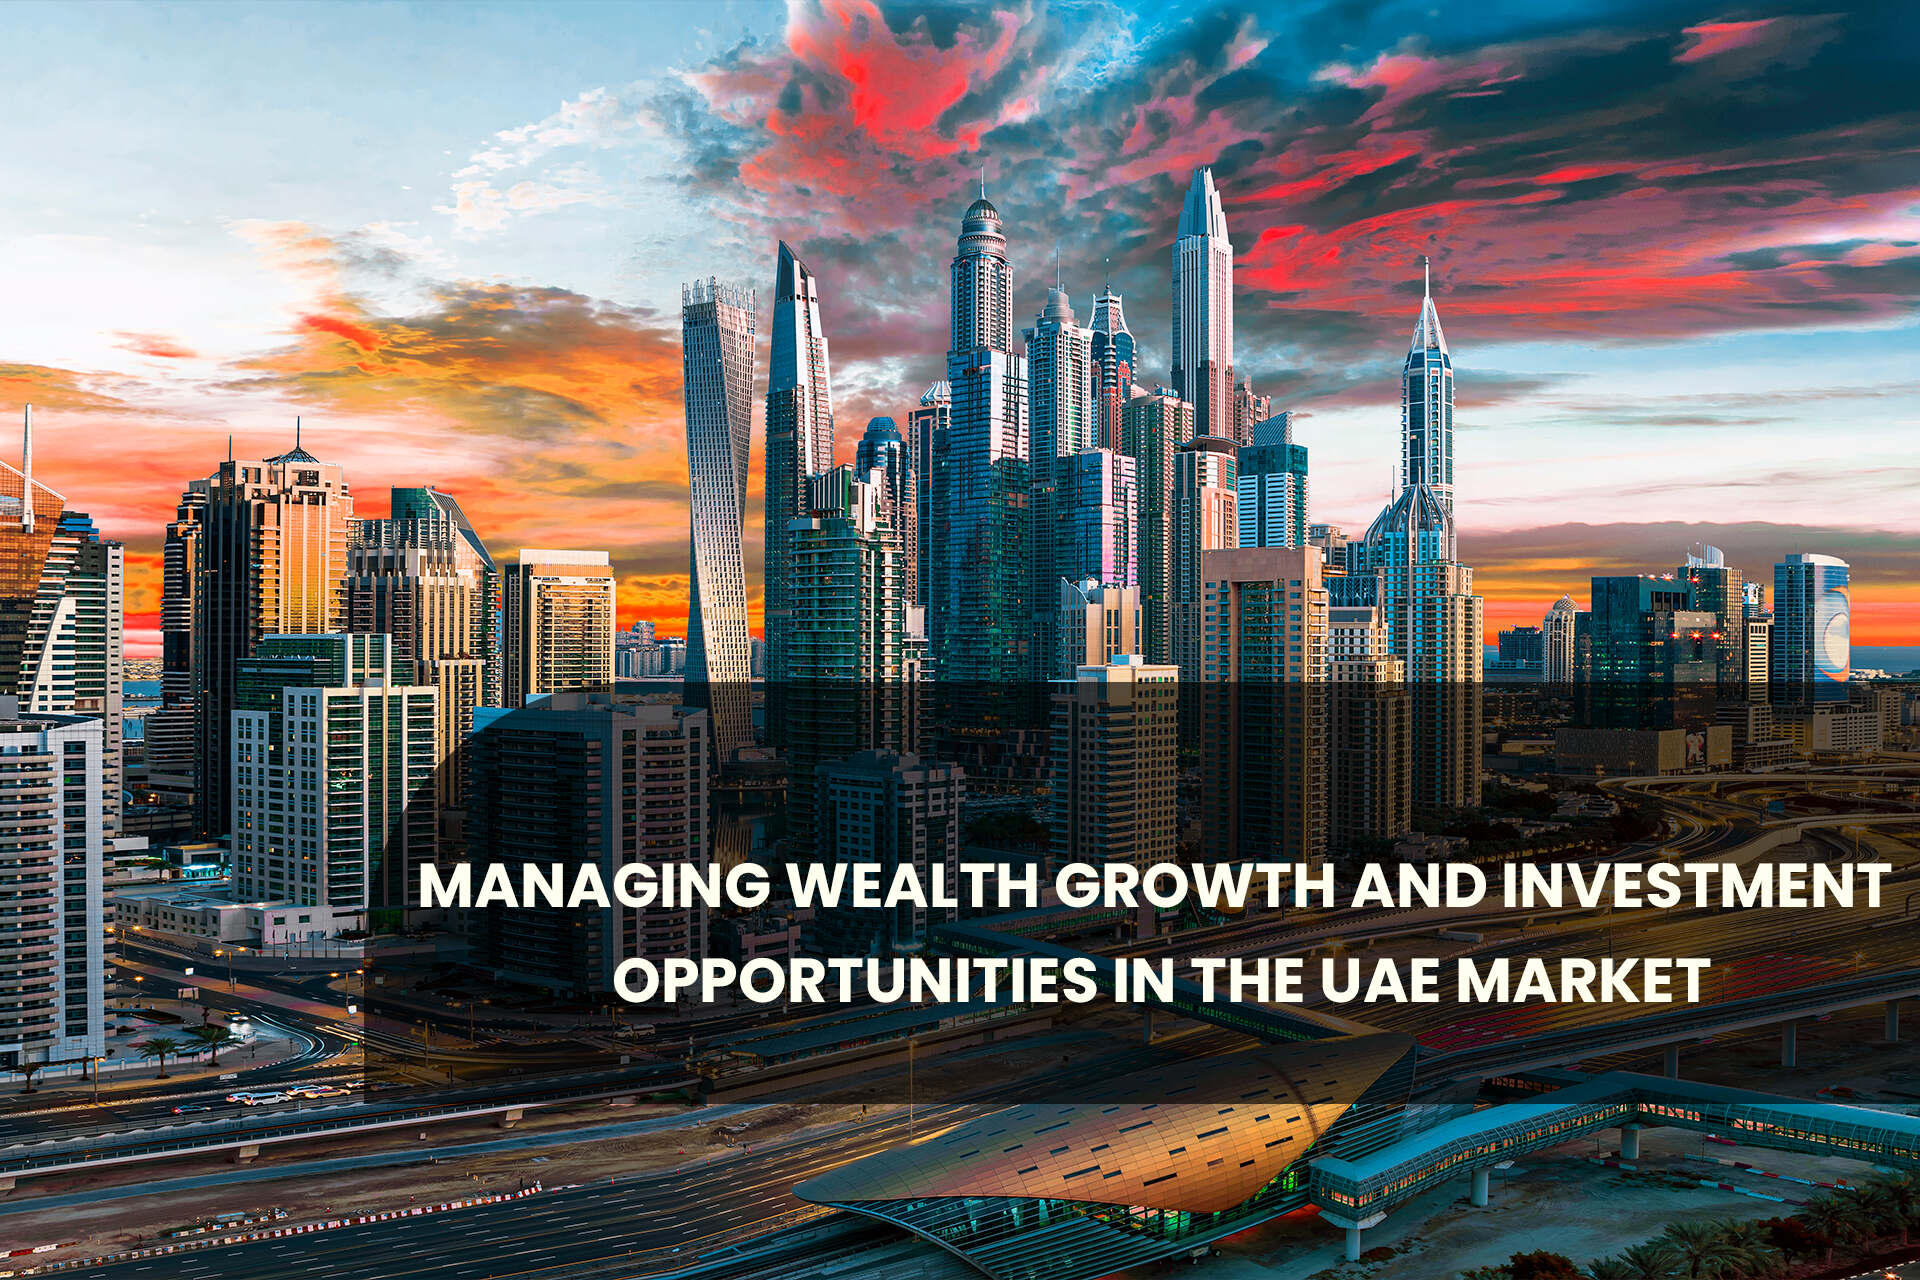 UAE market